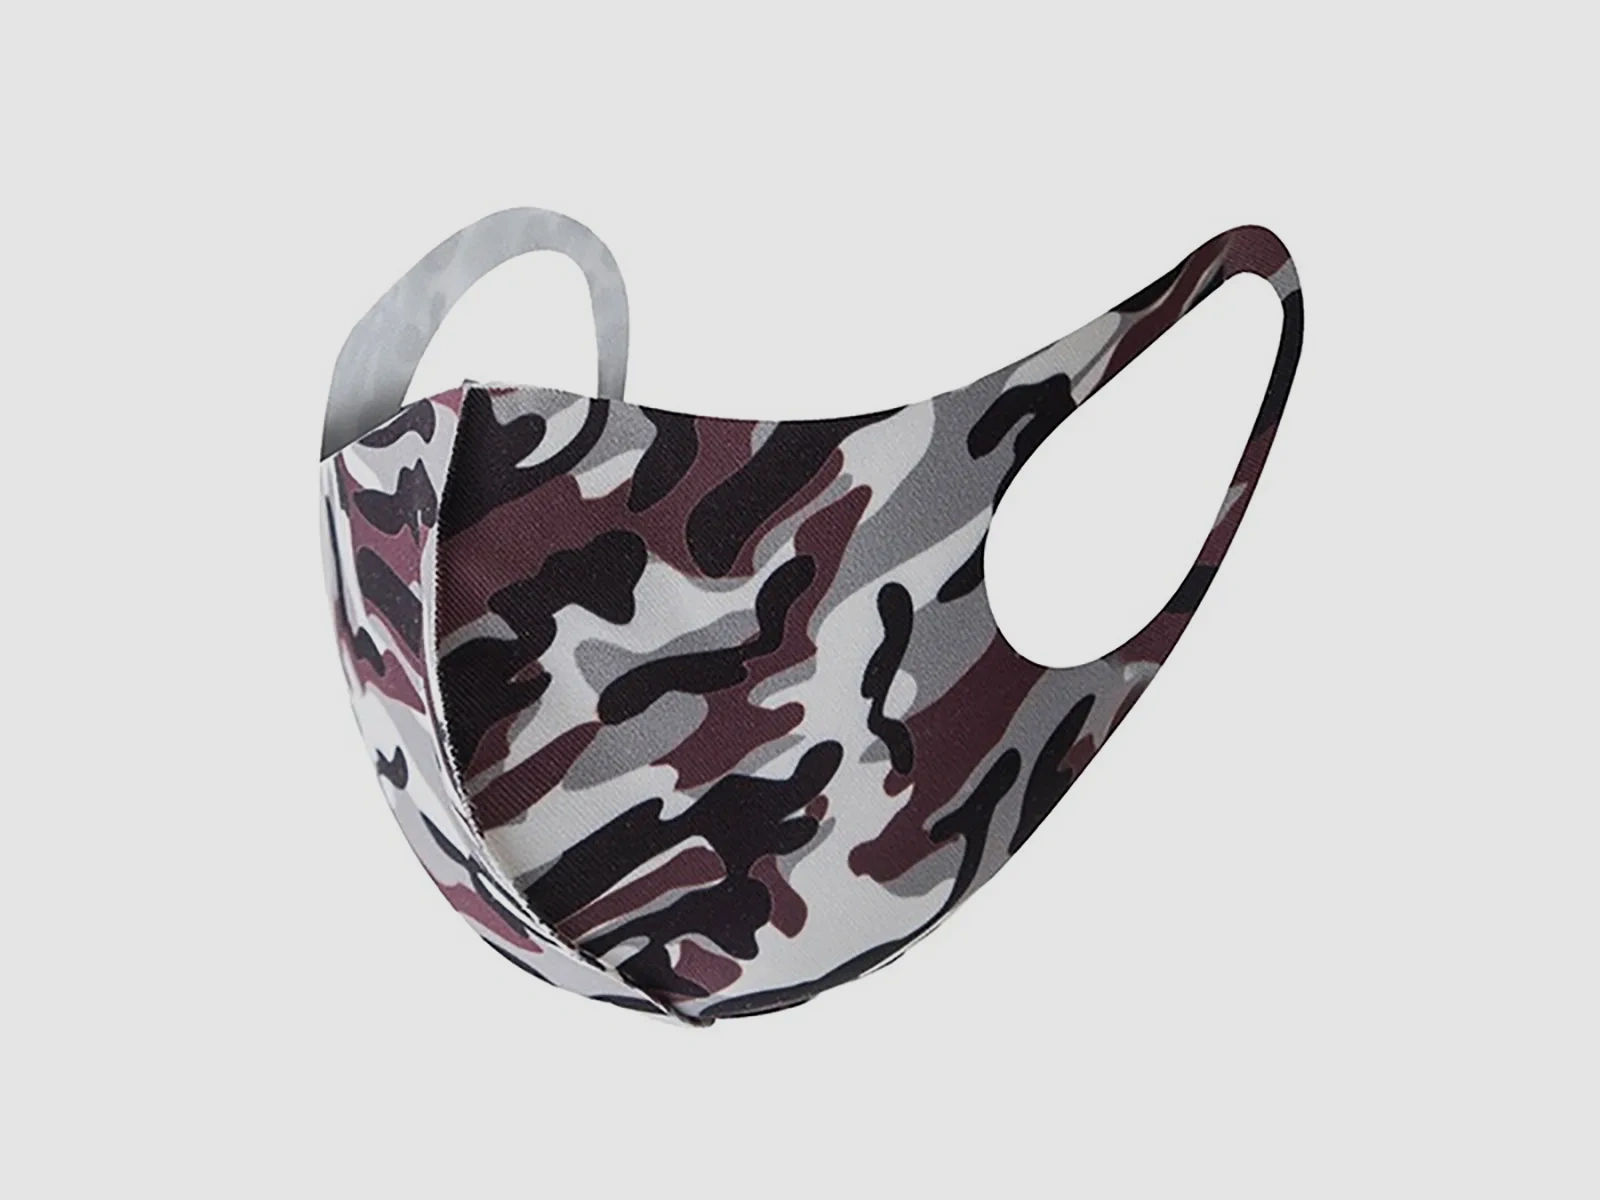 Mund-Nase-Abdeckung / Community Maske - Camouflage Lila-Grau - für Sie und Ihn